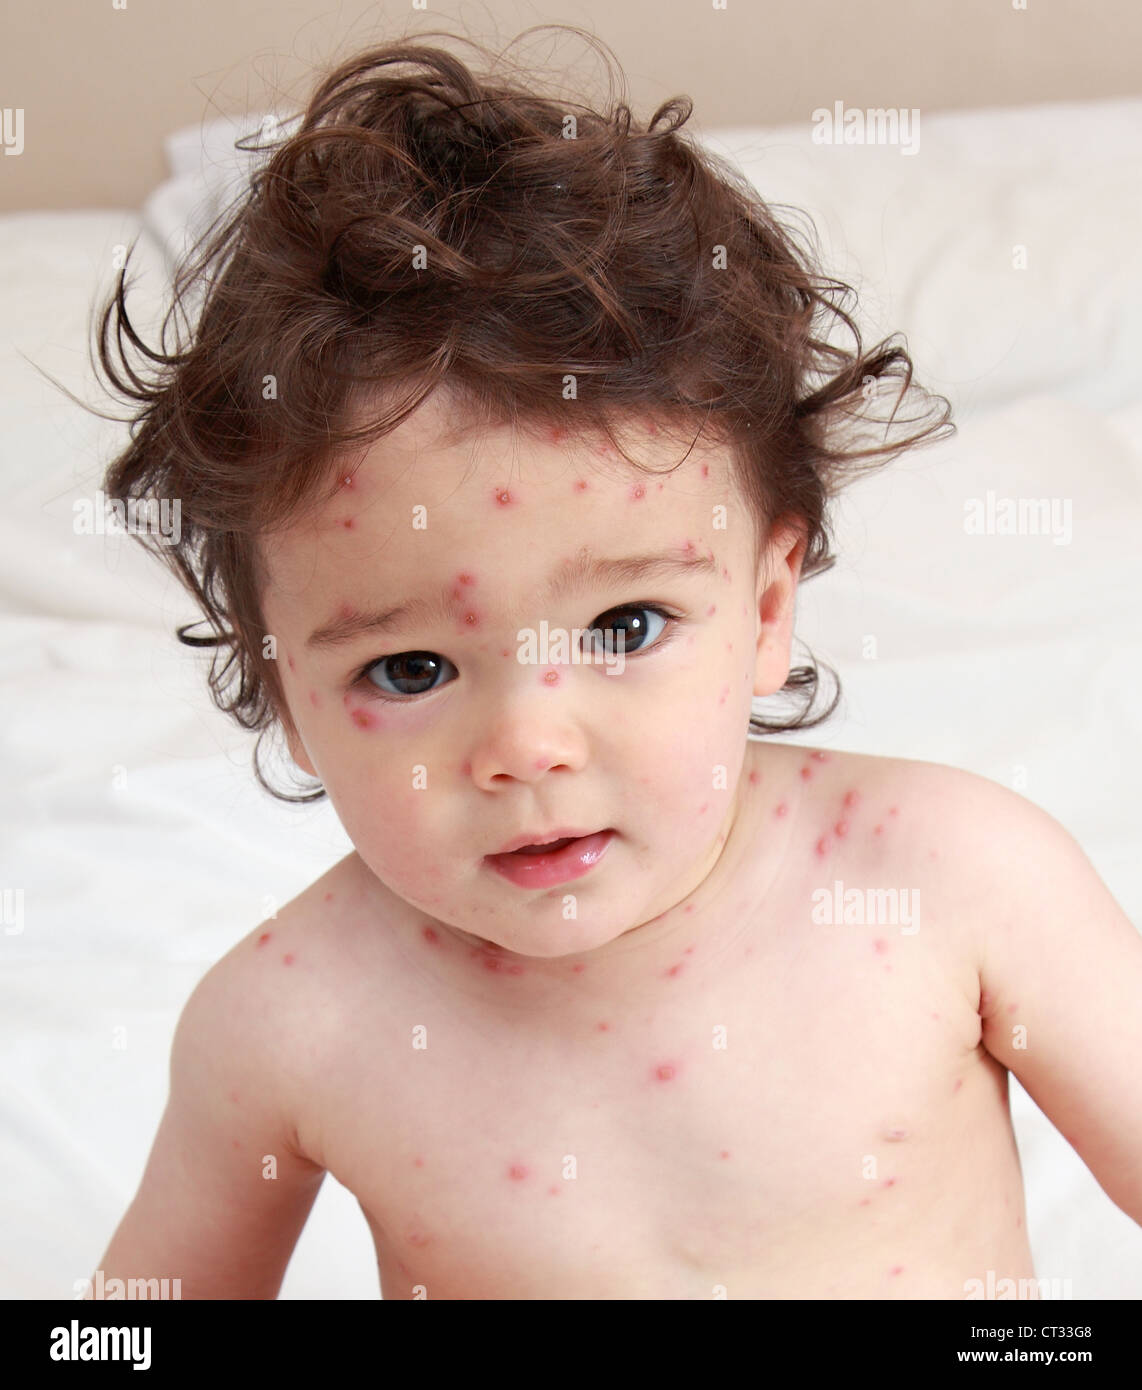 Bambino con la varicella Foto Stock